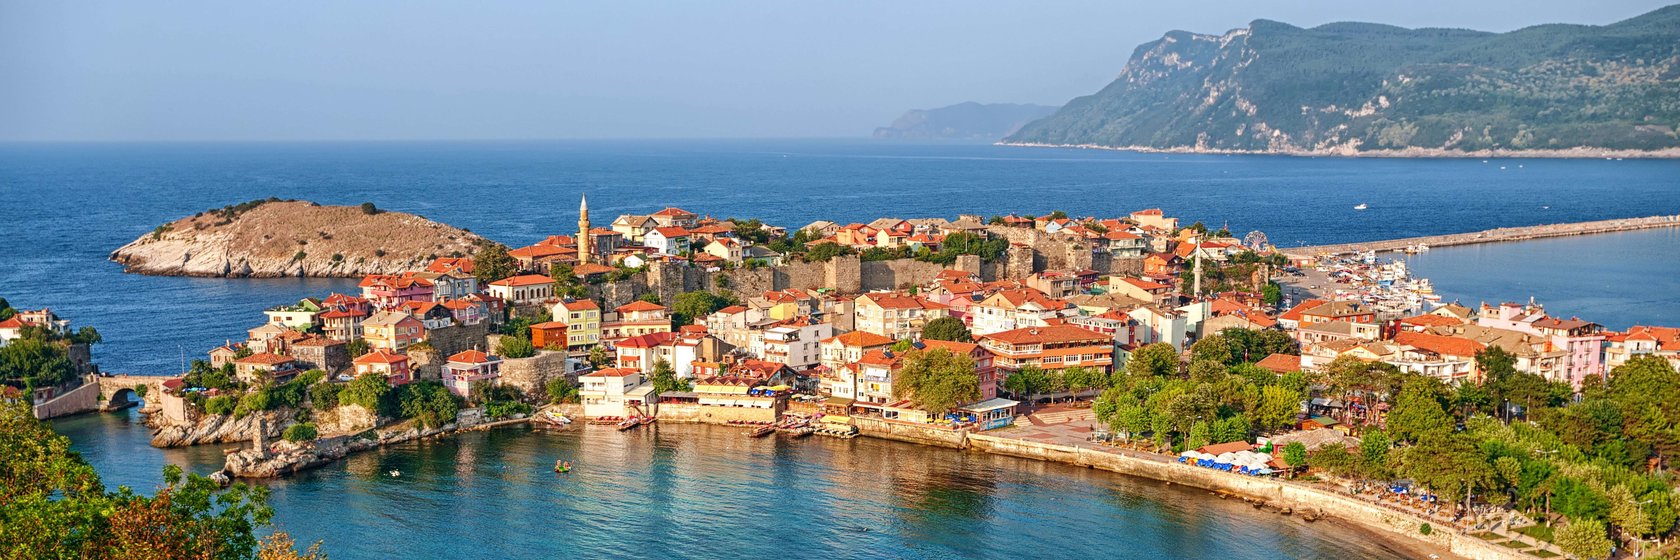 Hotely Černomořské pobřeží